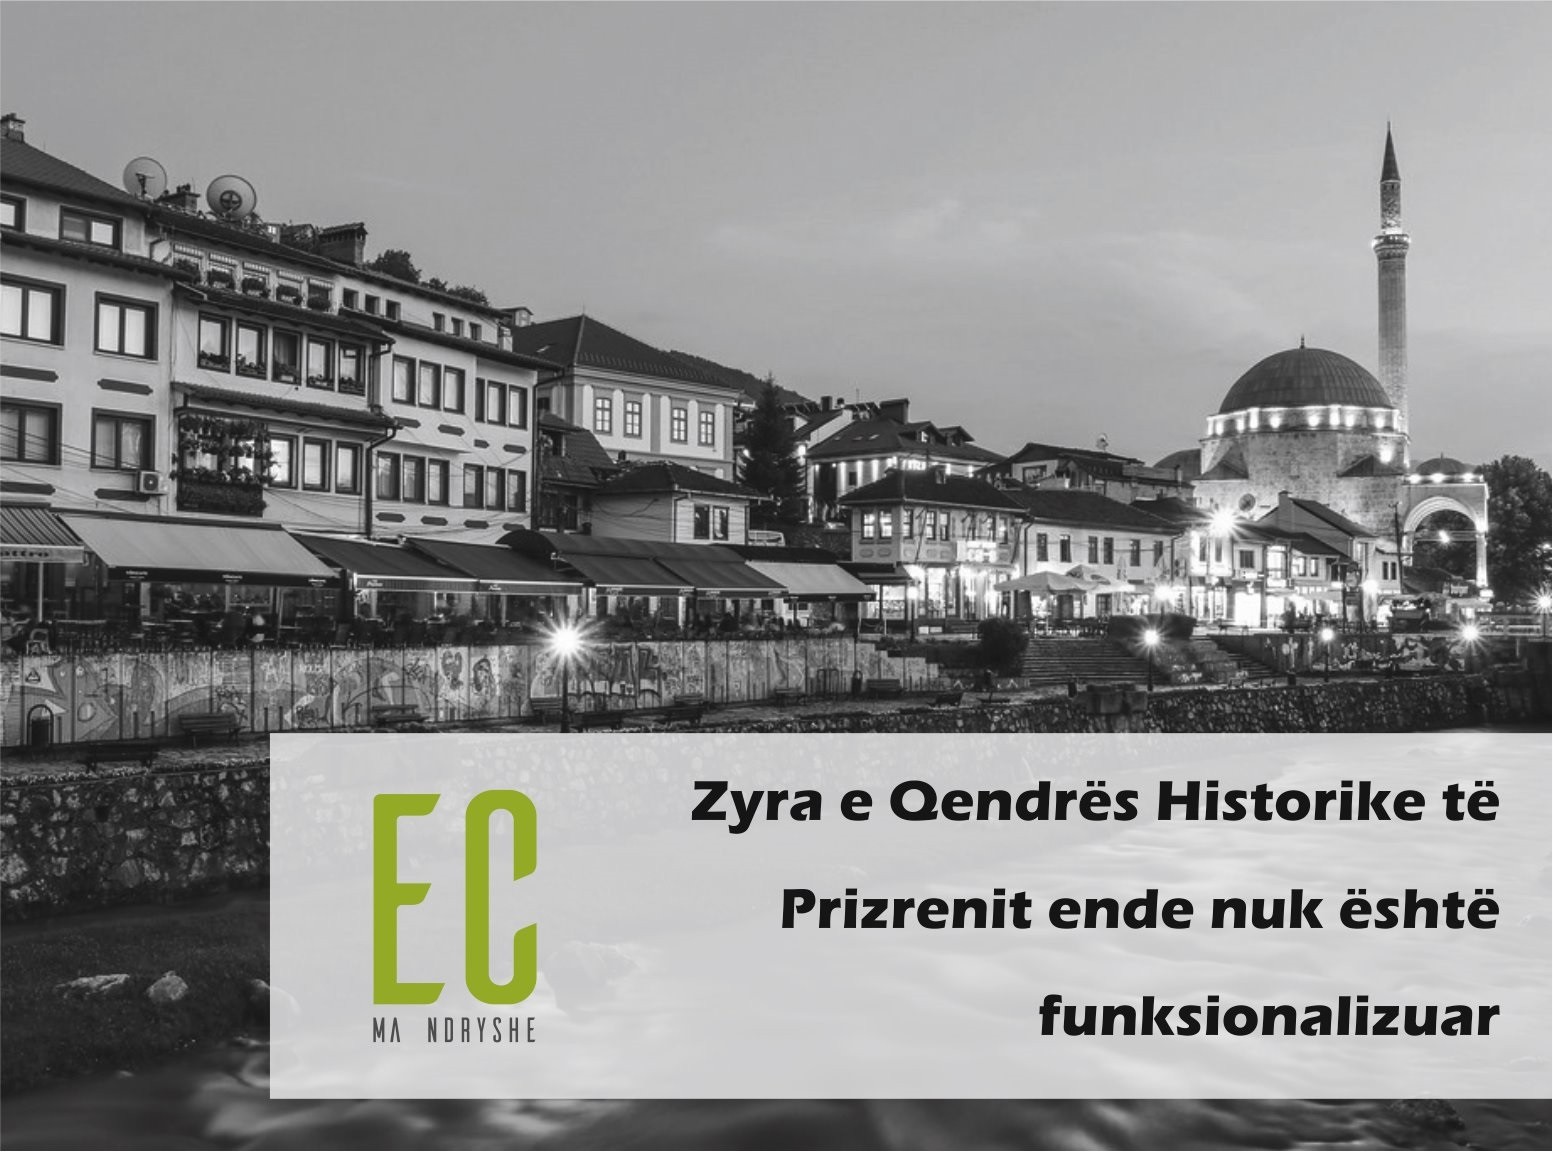 Zyra e Qendrës Historike të Prizrenit ende nuk është funksionalizuar